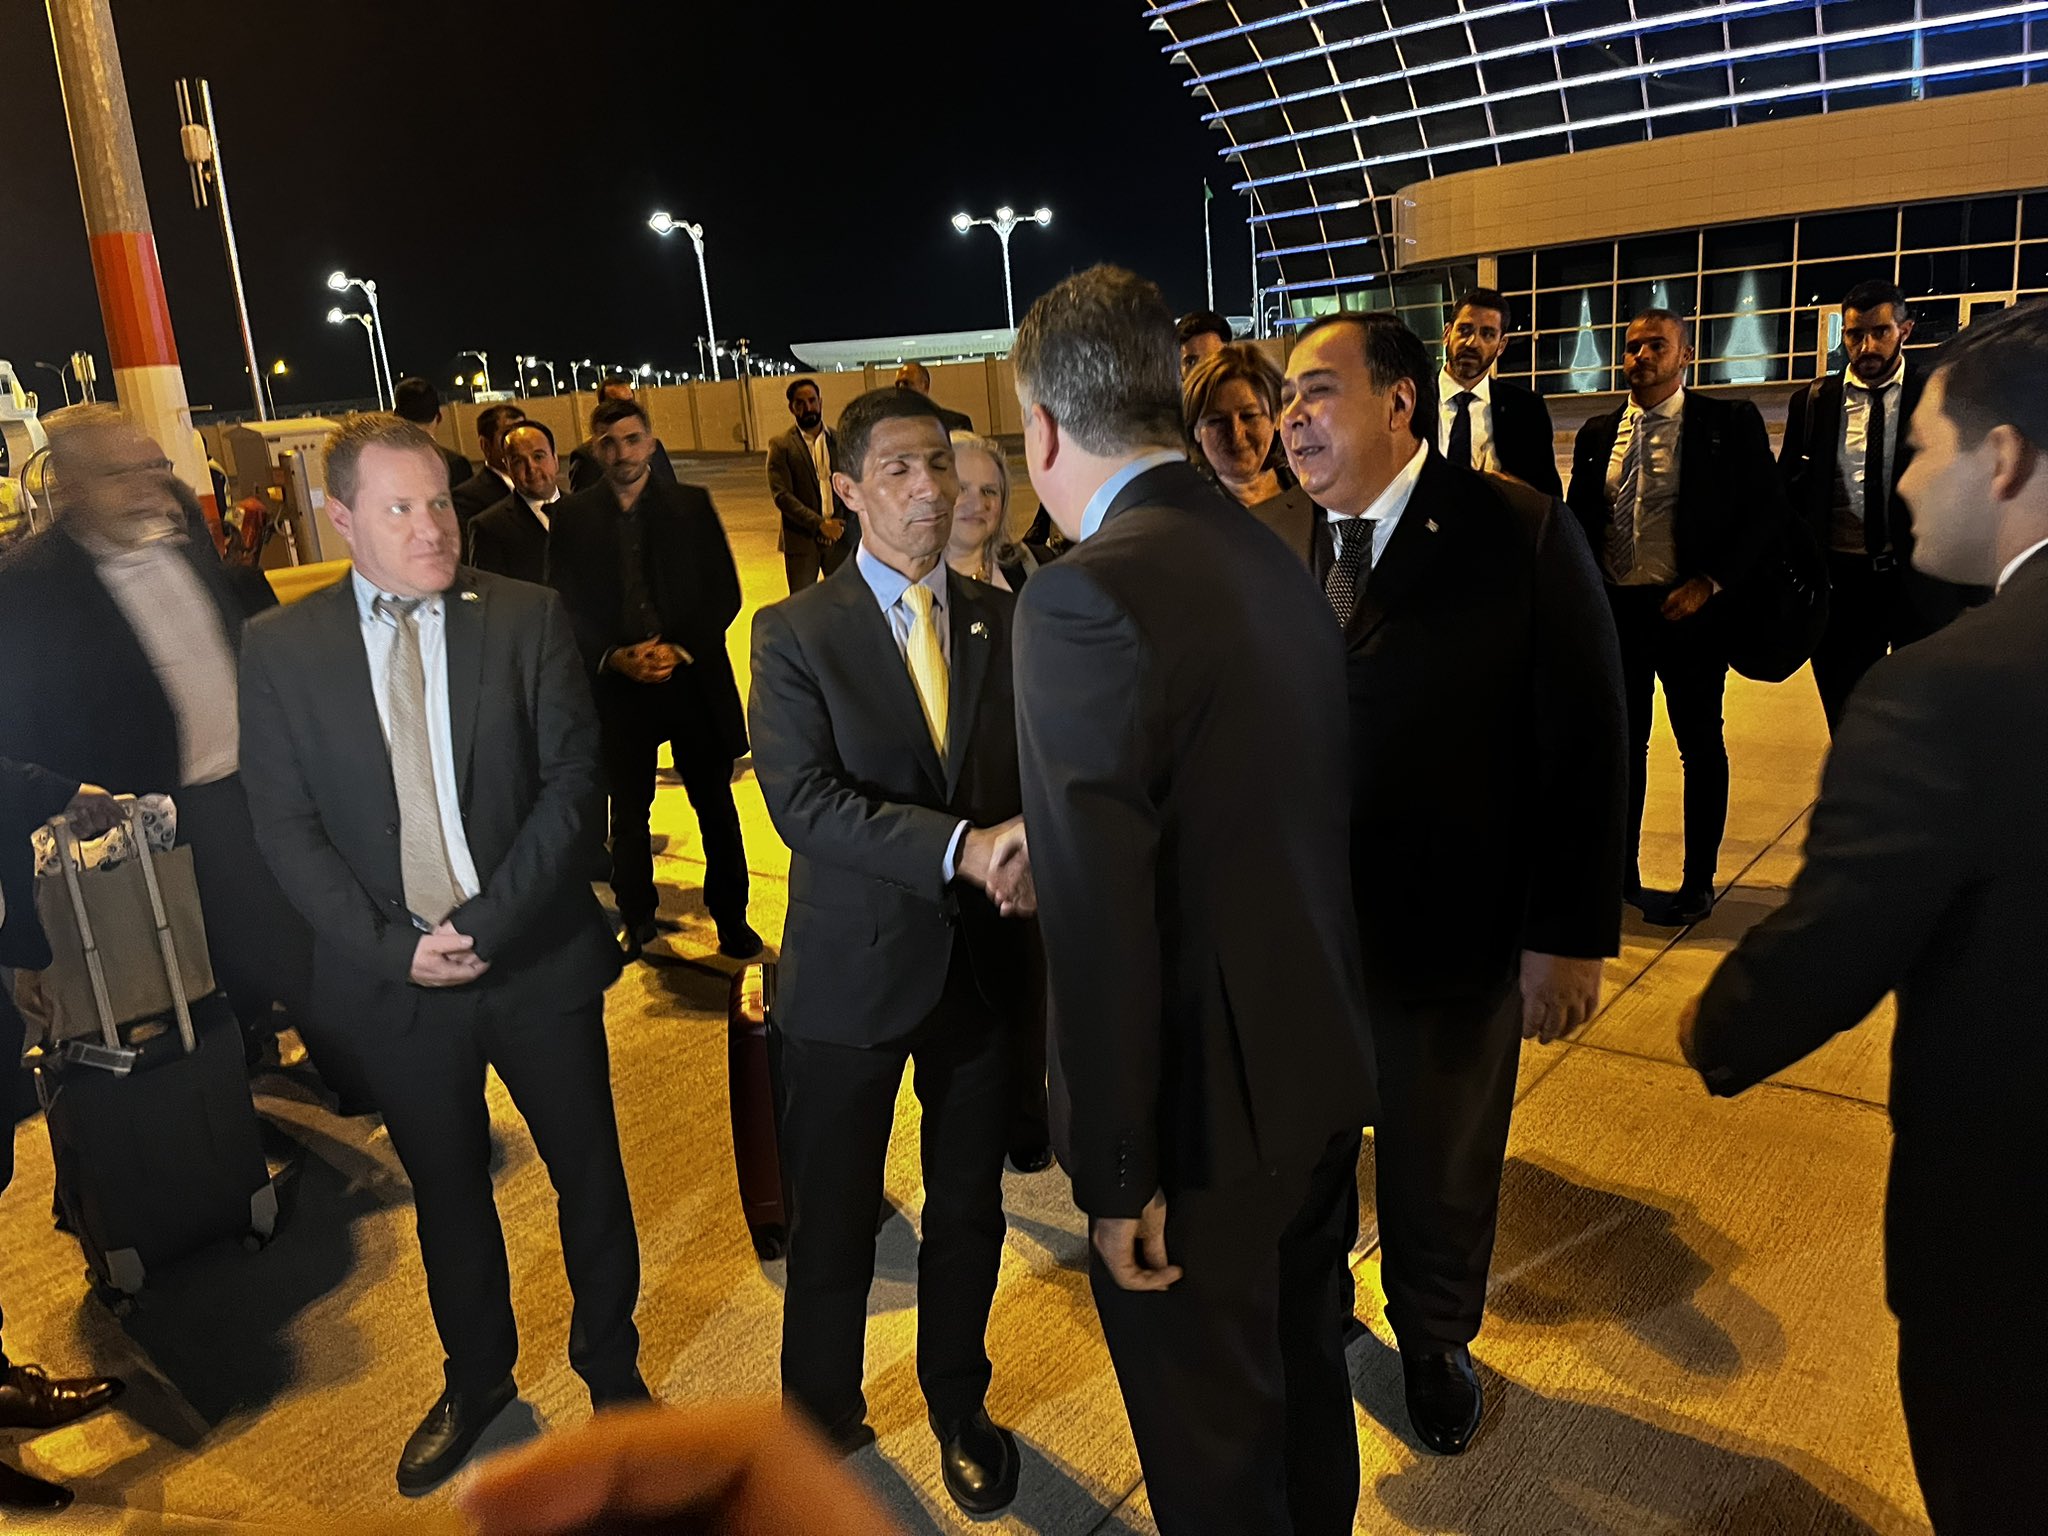 שר החוץ אלי כהן לוחץ את ידו של גריר ישראל בטורקמניסטן איסמעיל חאלדי , 19 באפריל 2023 (צילום: טל שניידר)